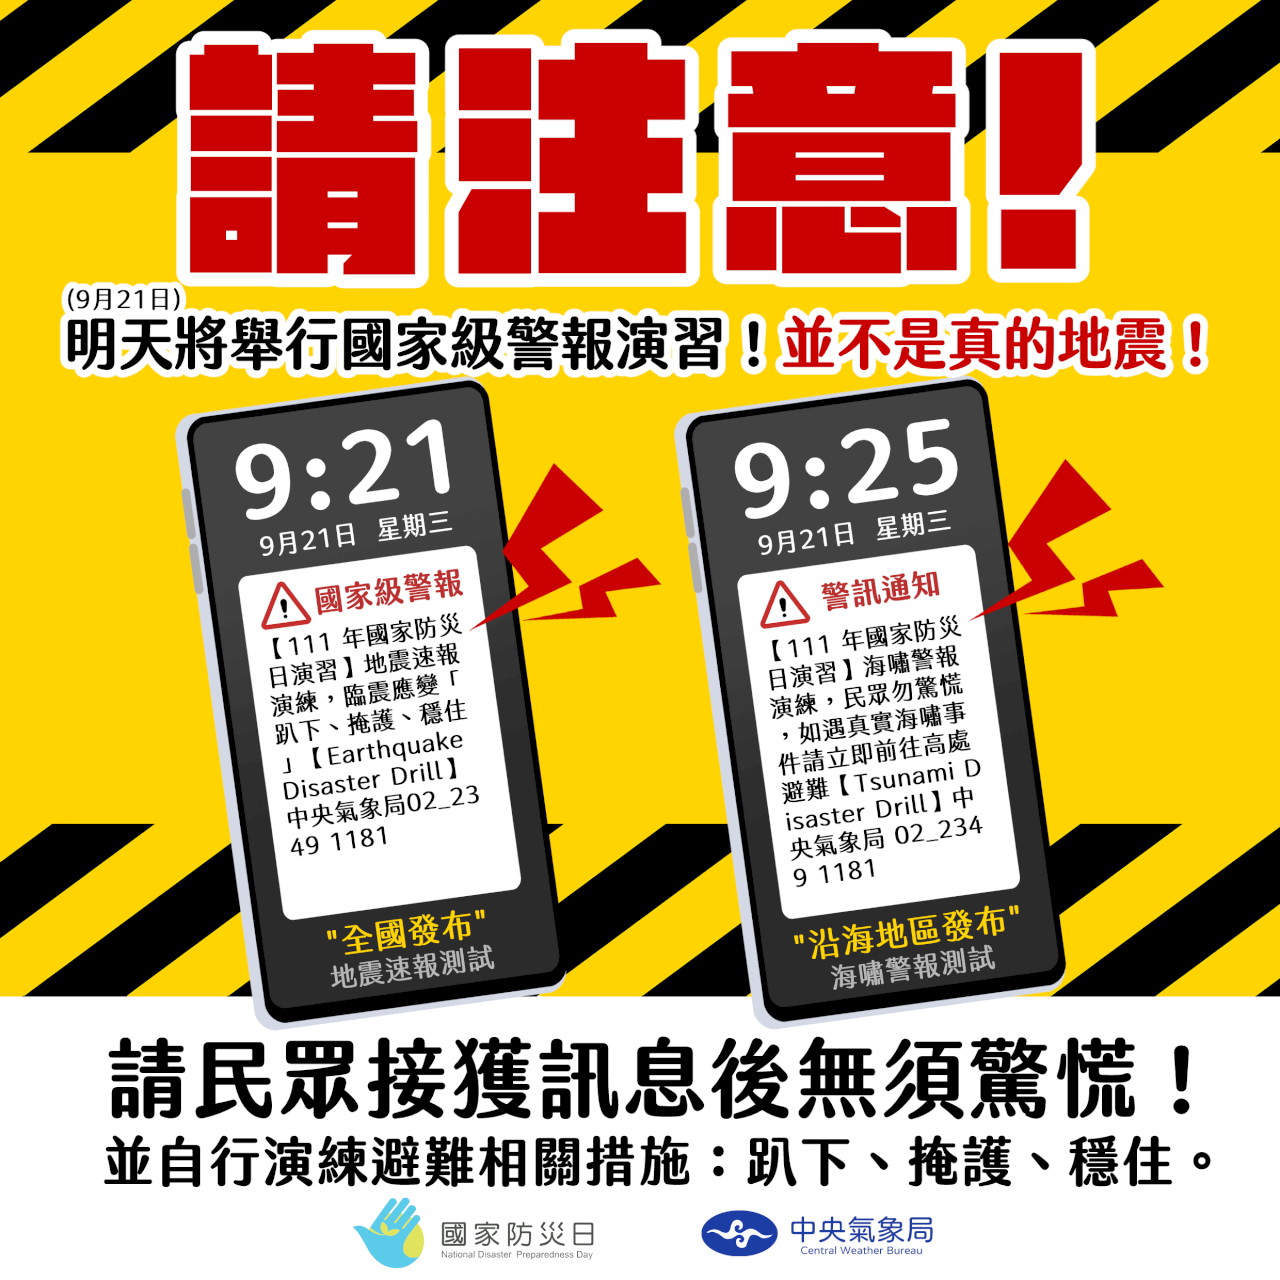 明將舉行「國家級警報演習」 氣象局：並非真的地震！